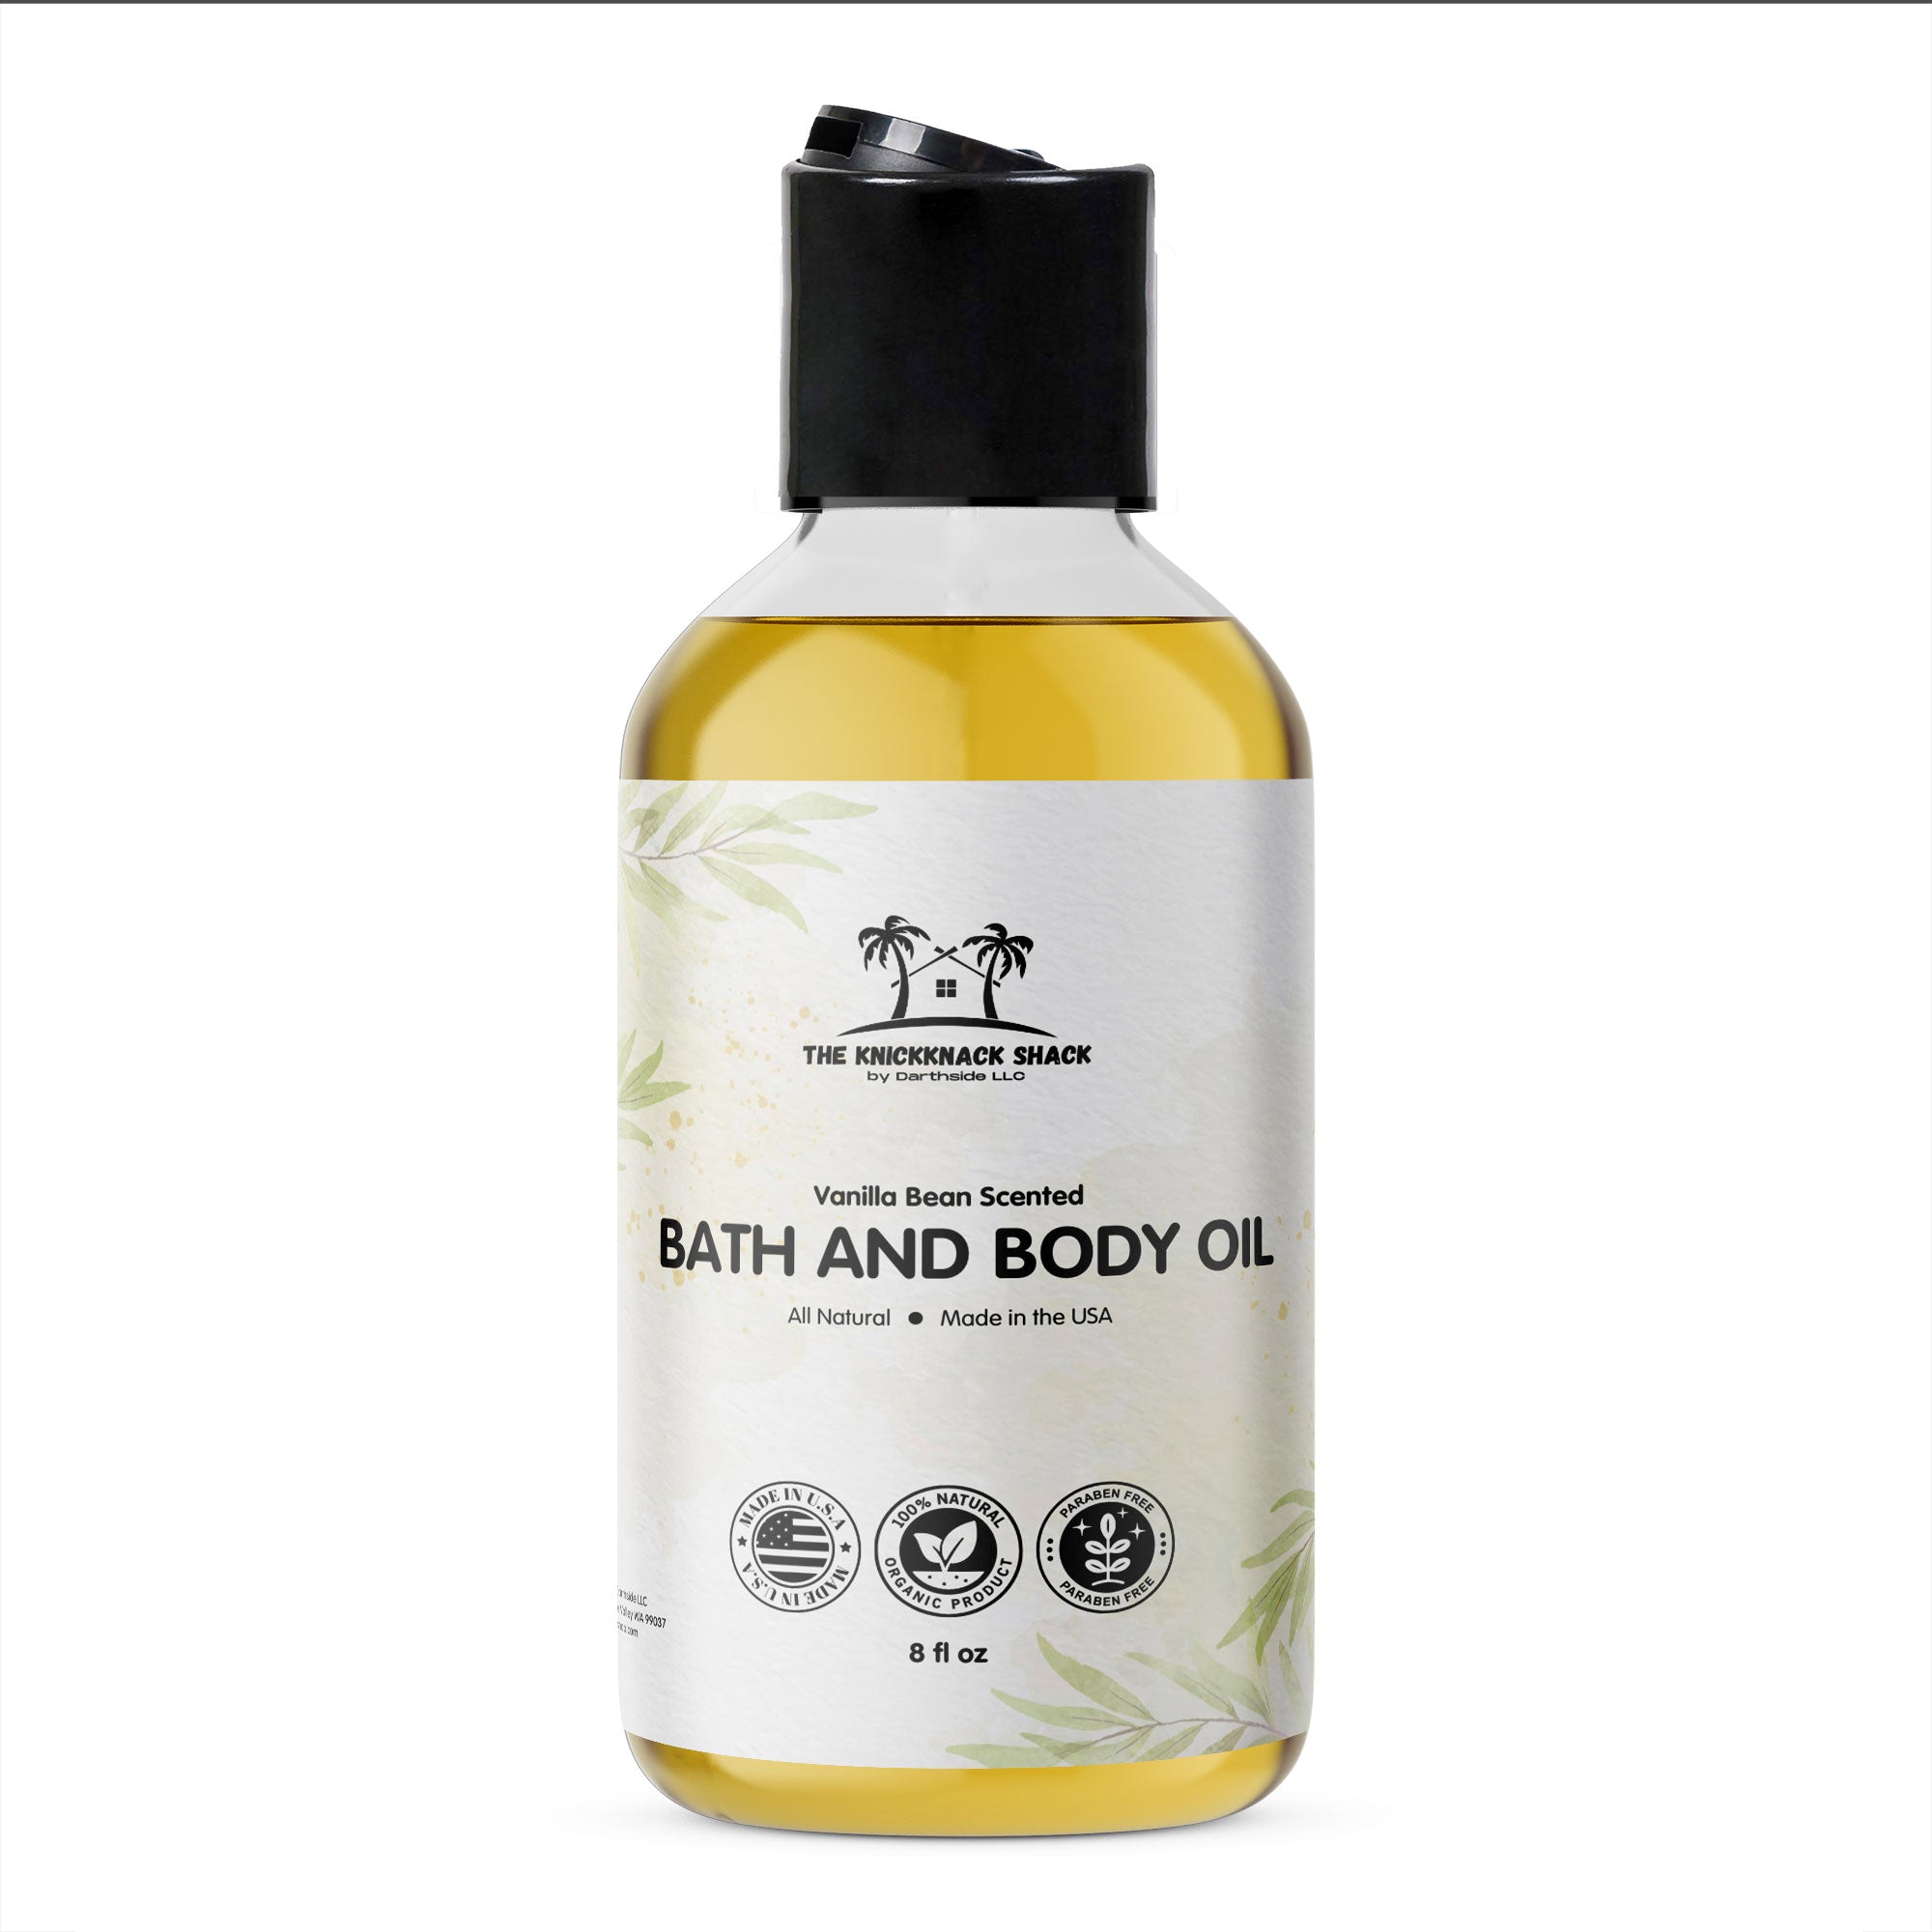 Vanilla Bean Scented Bath and Body Oil